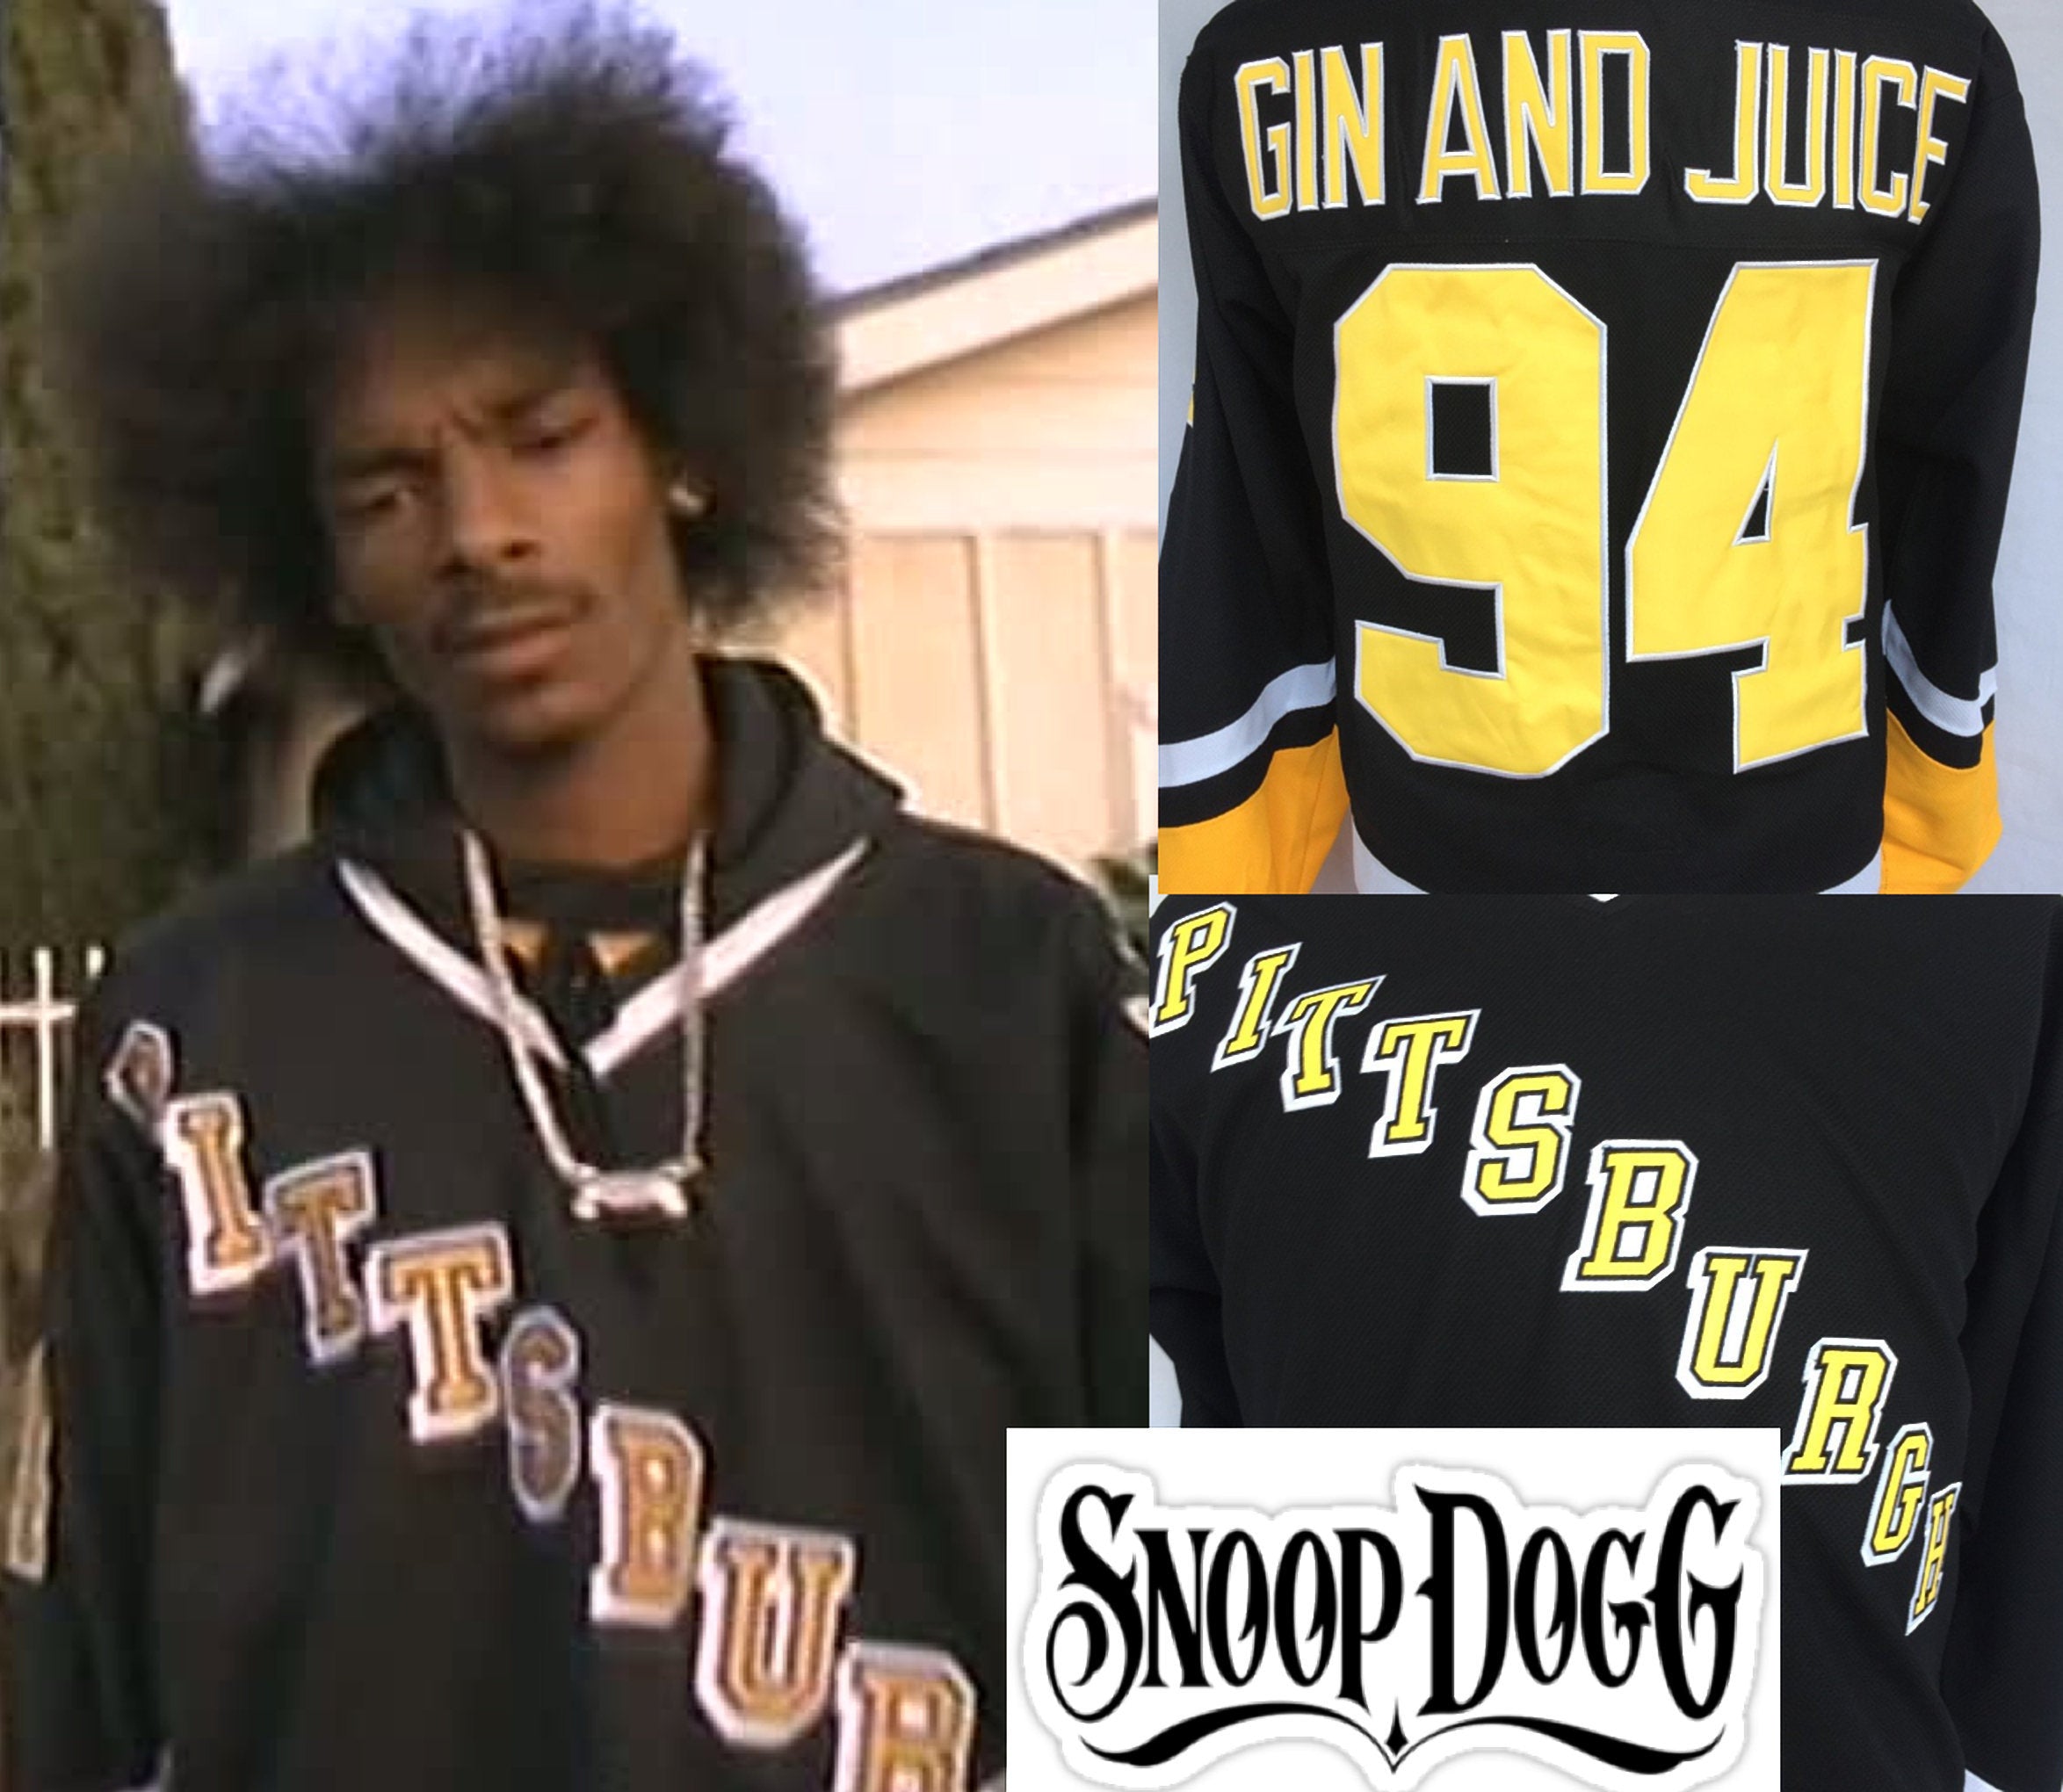 Snoop Dogg dons Saskatoon Blades hockey jersey during concert - Saskatoon